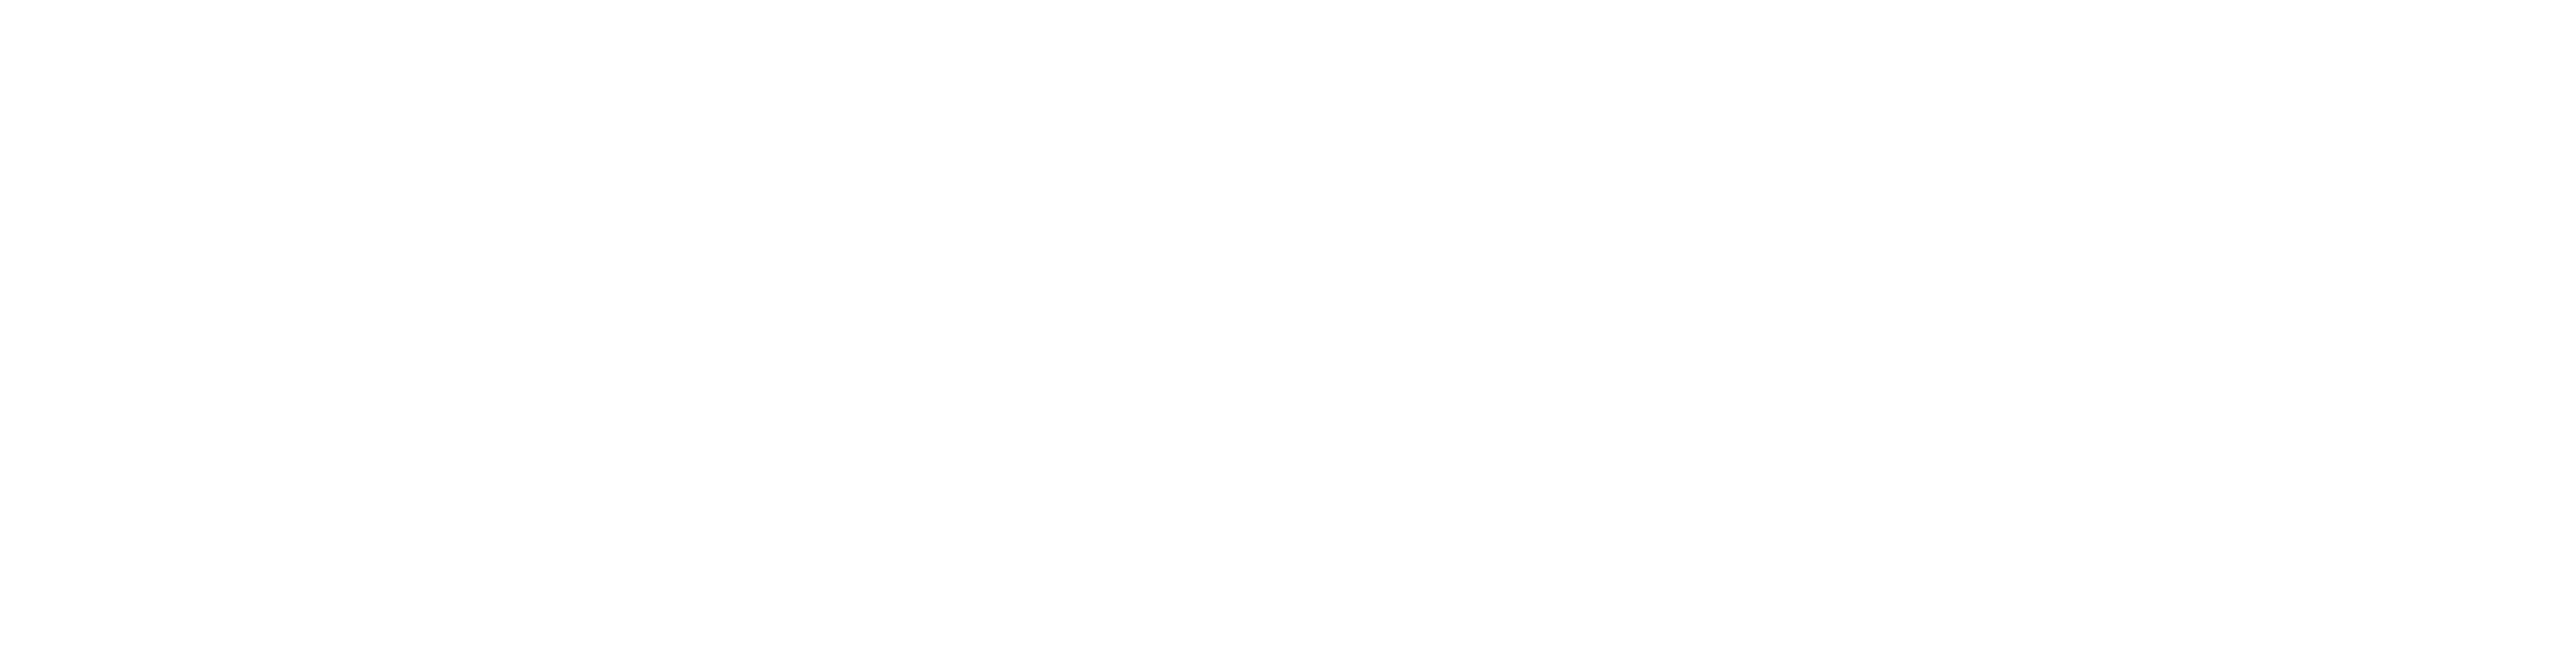 Park Lane Garage